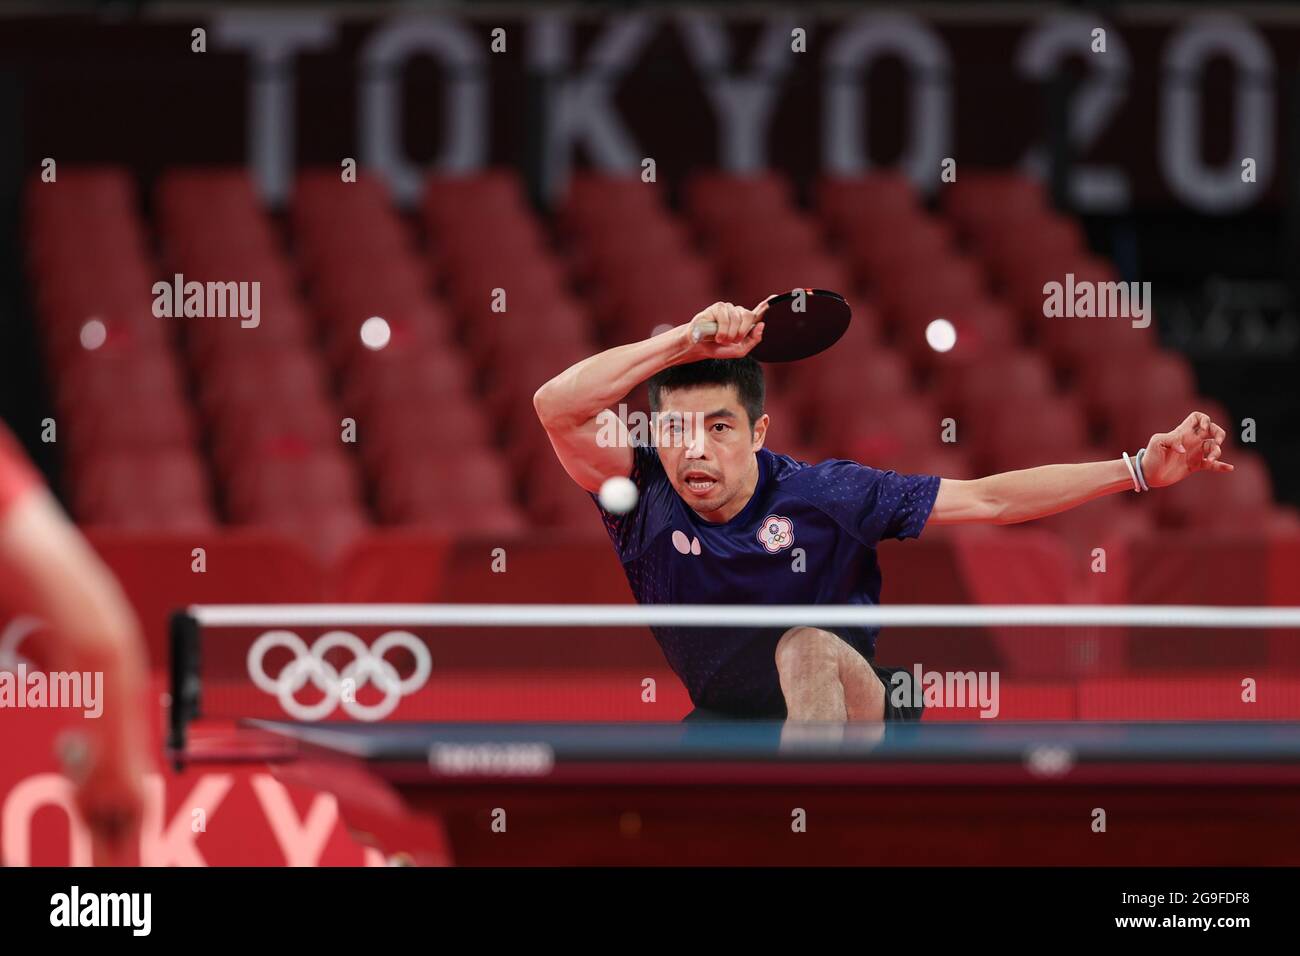 (210726) -- TOKYO, 26 luglio 2021 (Xinhua) -- Chuang Chih Yuan di Taibei Cinese compete durante il Ping Tennis Men's Singles Round 3 ai Giochi Olimpici di Tokyo 2020 a Tokyo, Giappone, 26 luglio 2021. Foto Stock